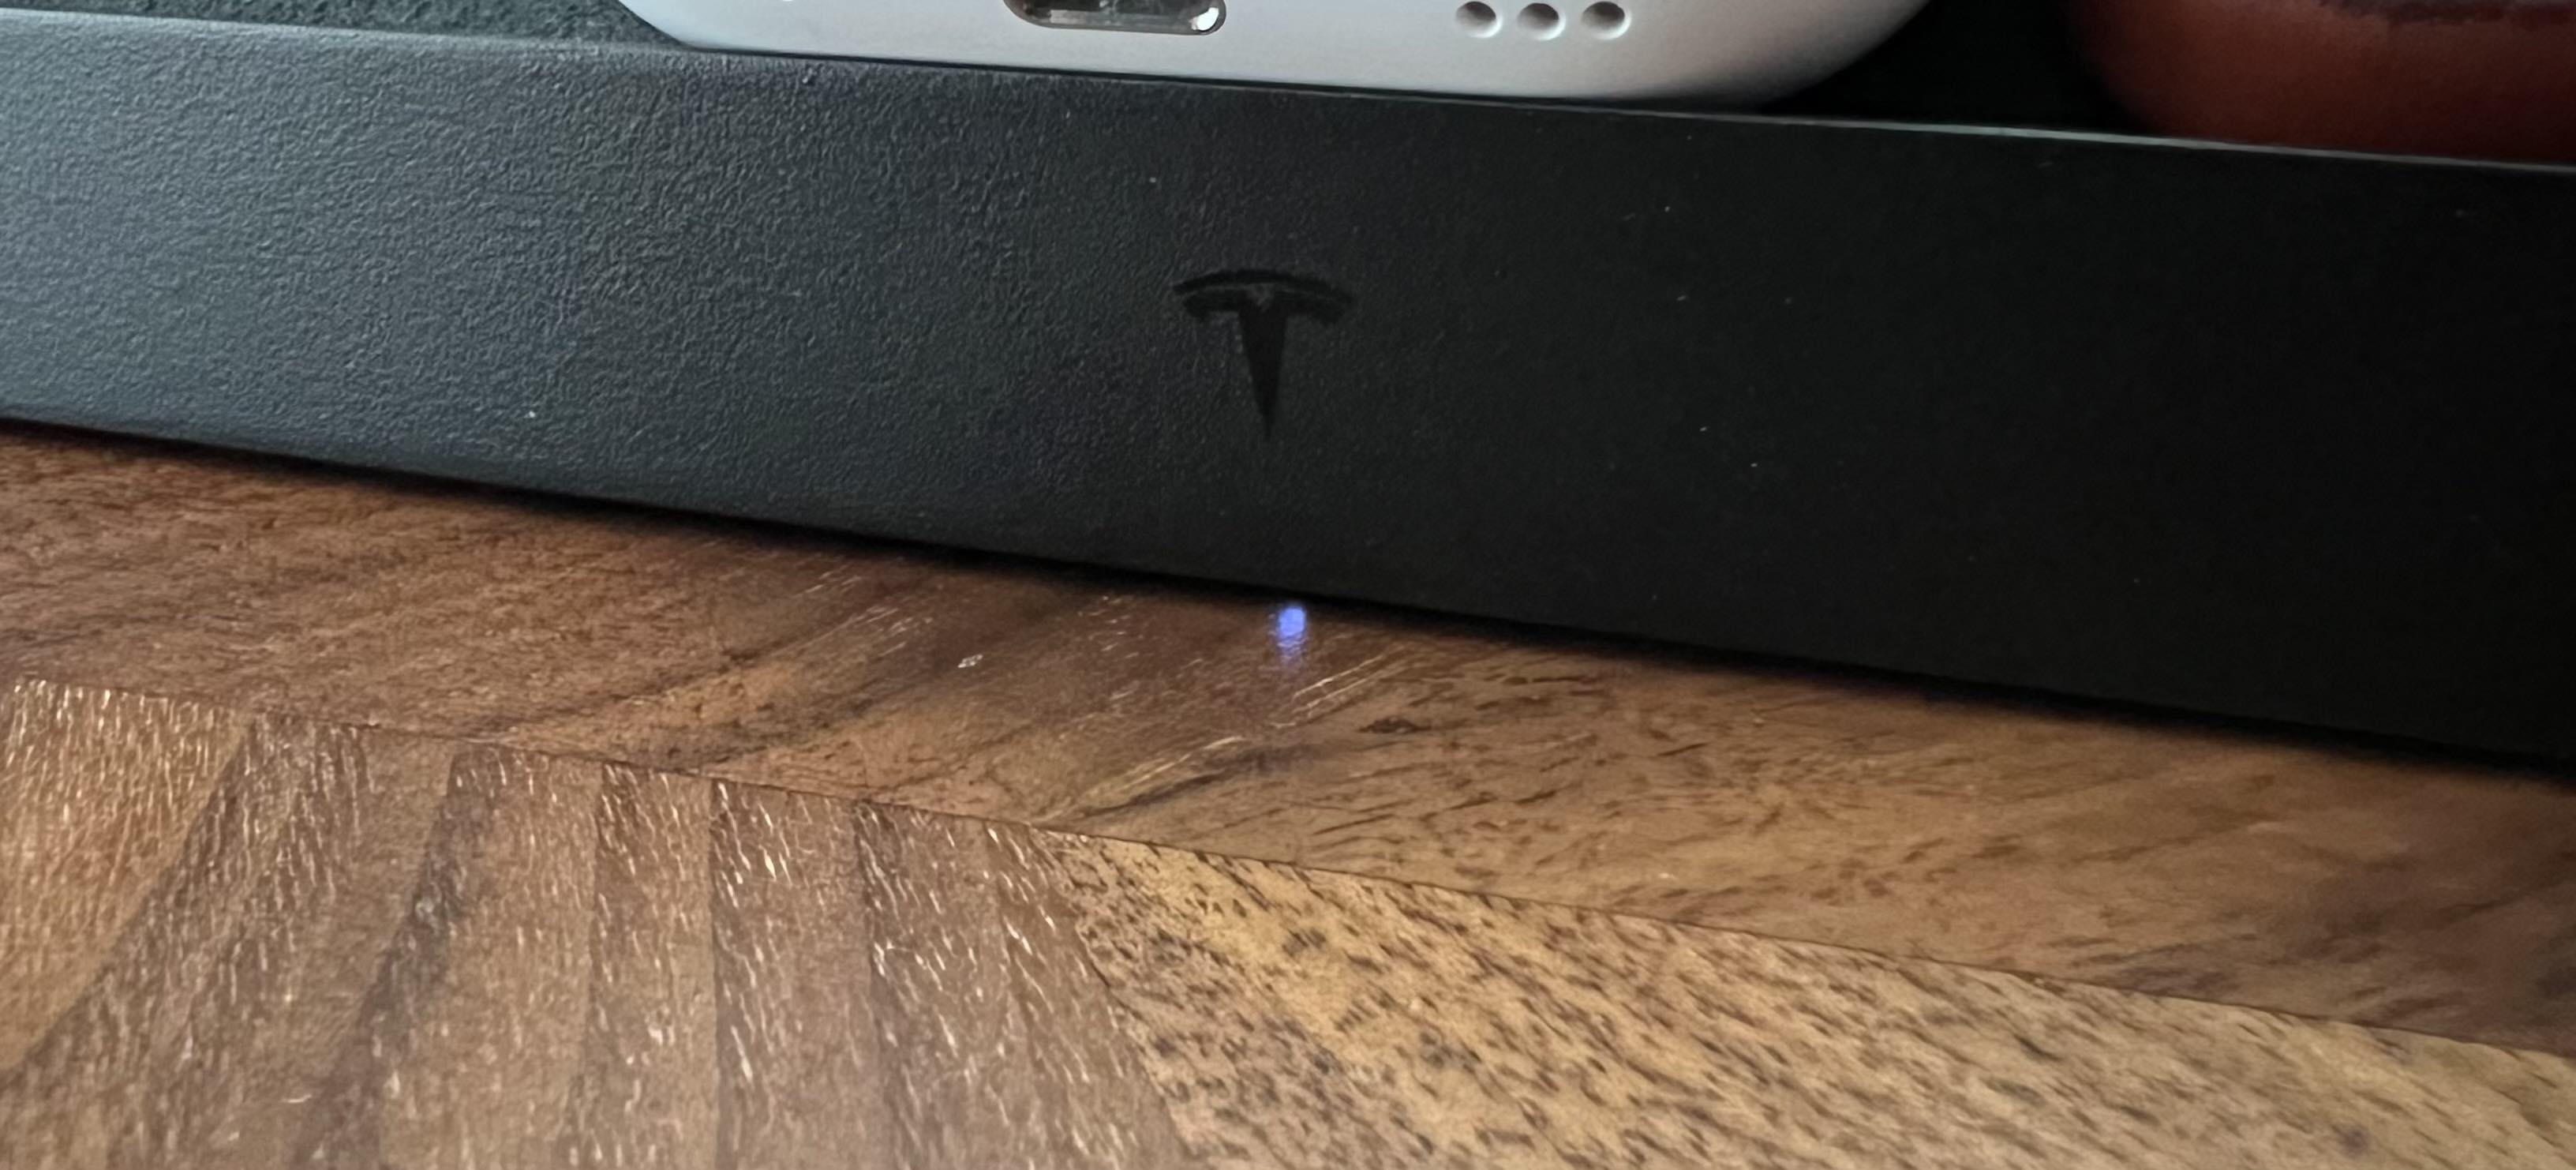 Wskaźnik LED bezprzewodowej platformy ładującej Tesla